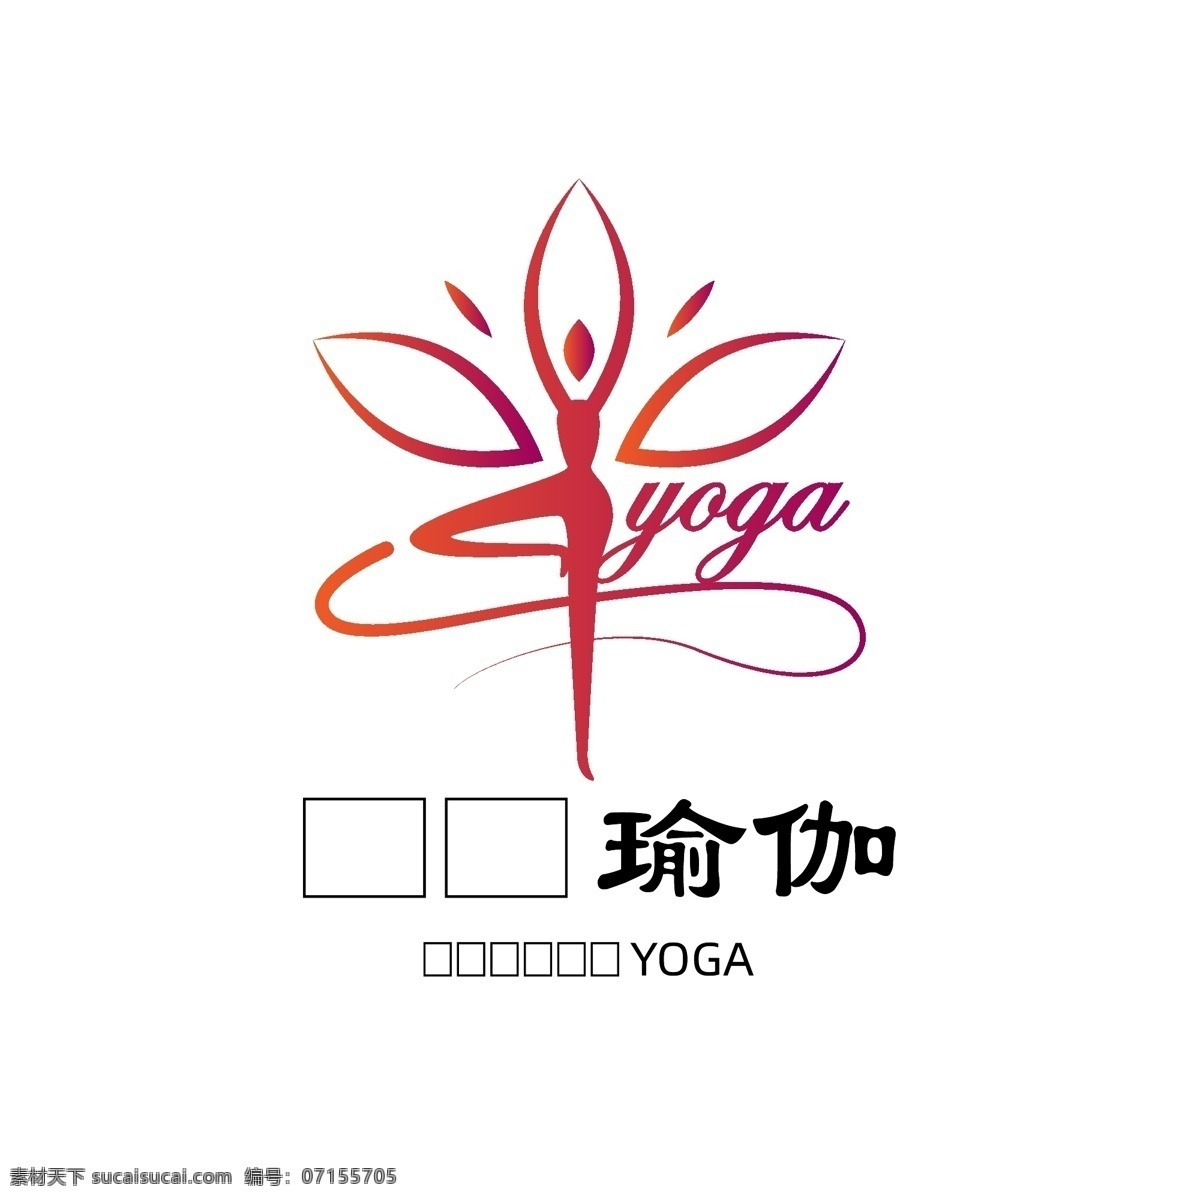 瑜伽 公司 logo yoga 印度瑜伽 练瑜伽 瑜伽术 瑜伽logo logo设计